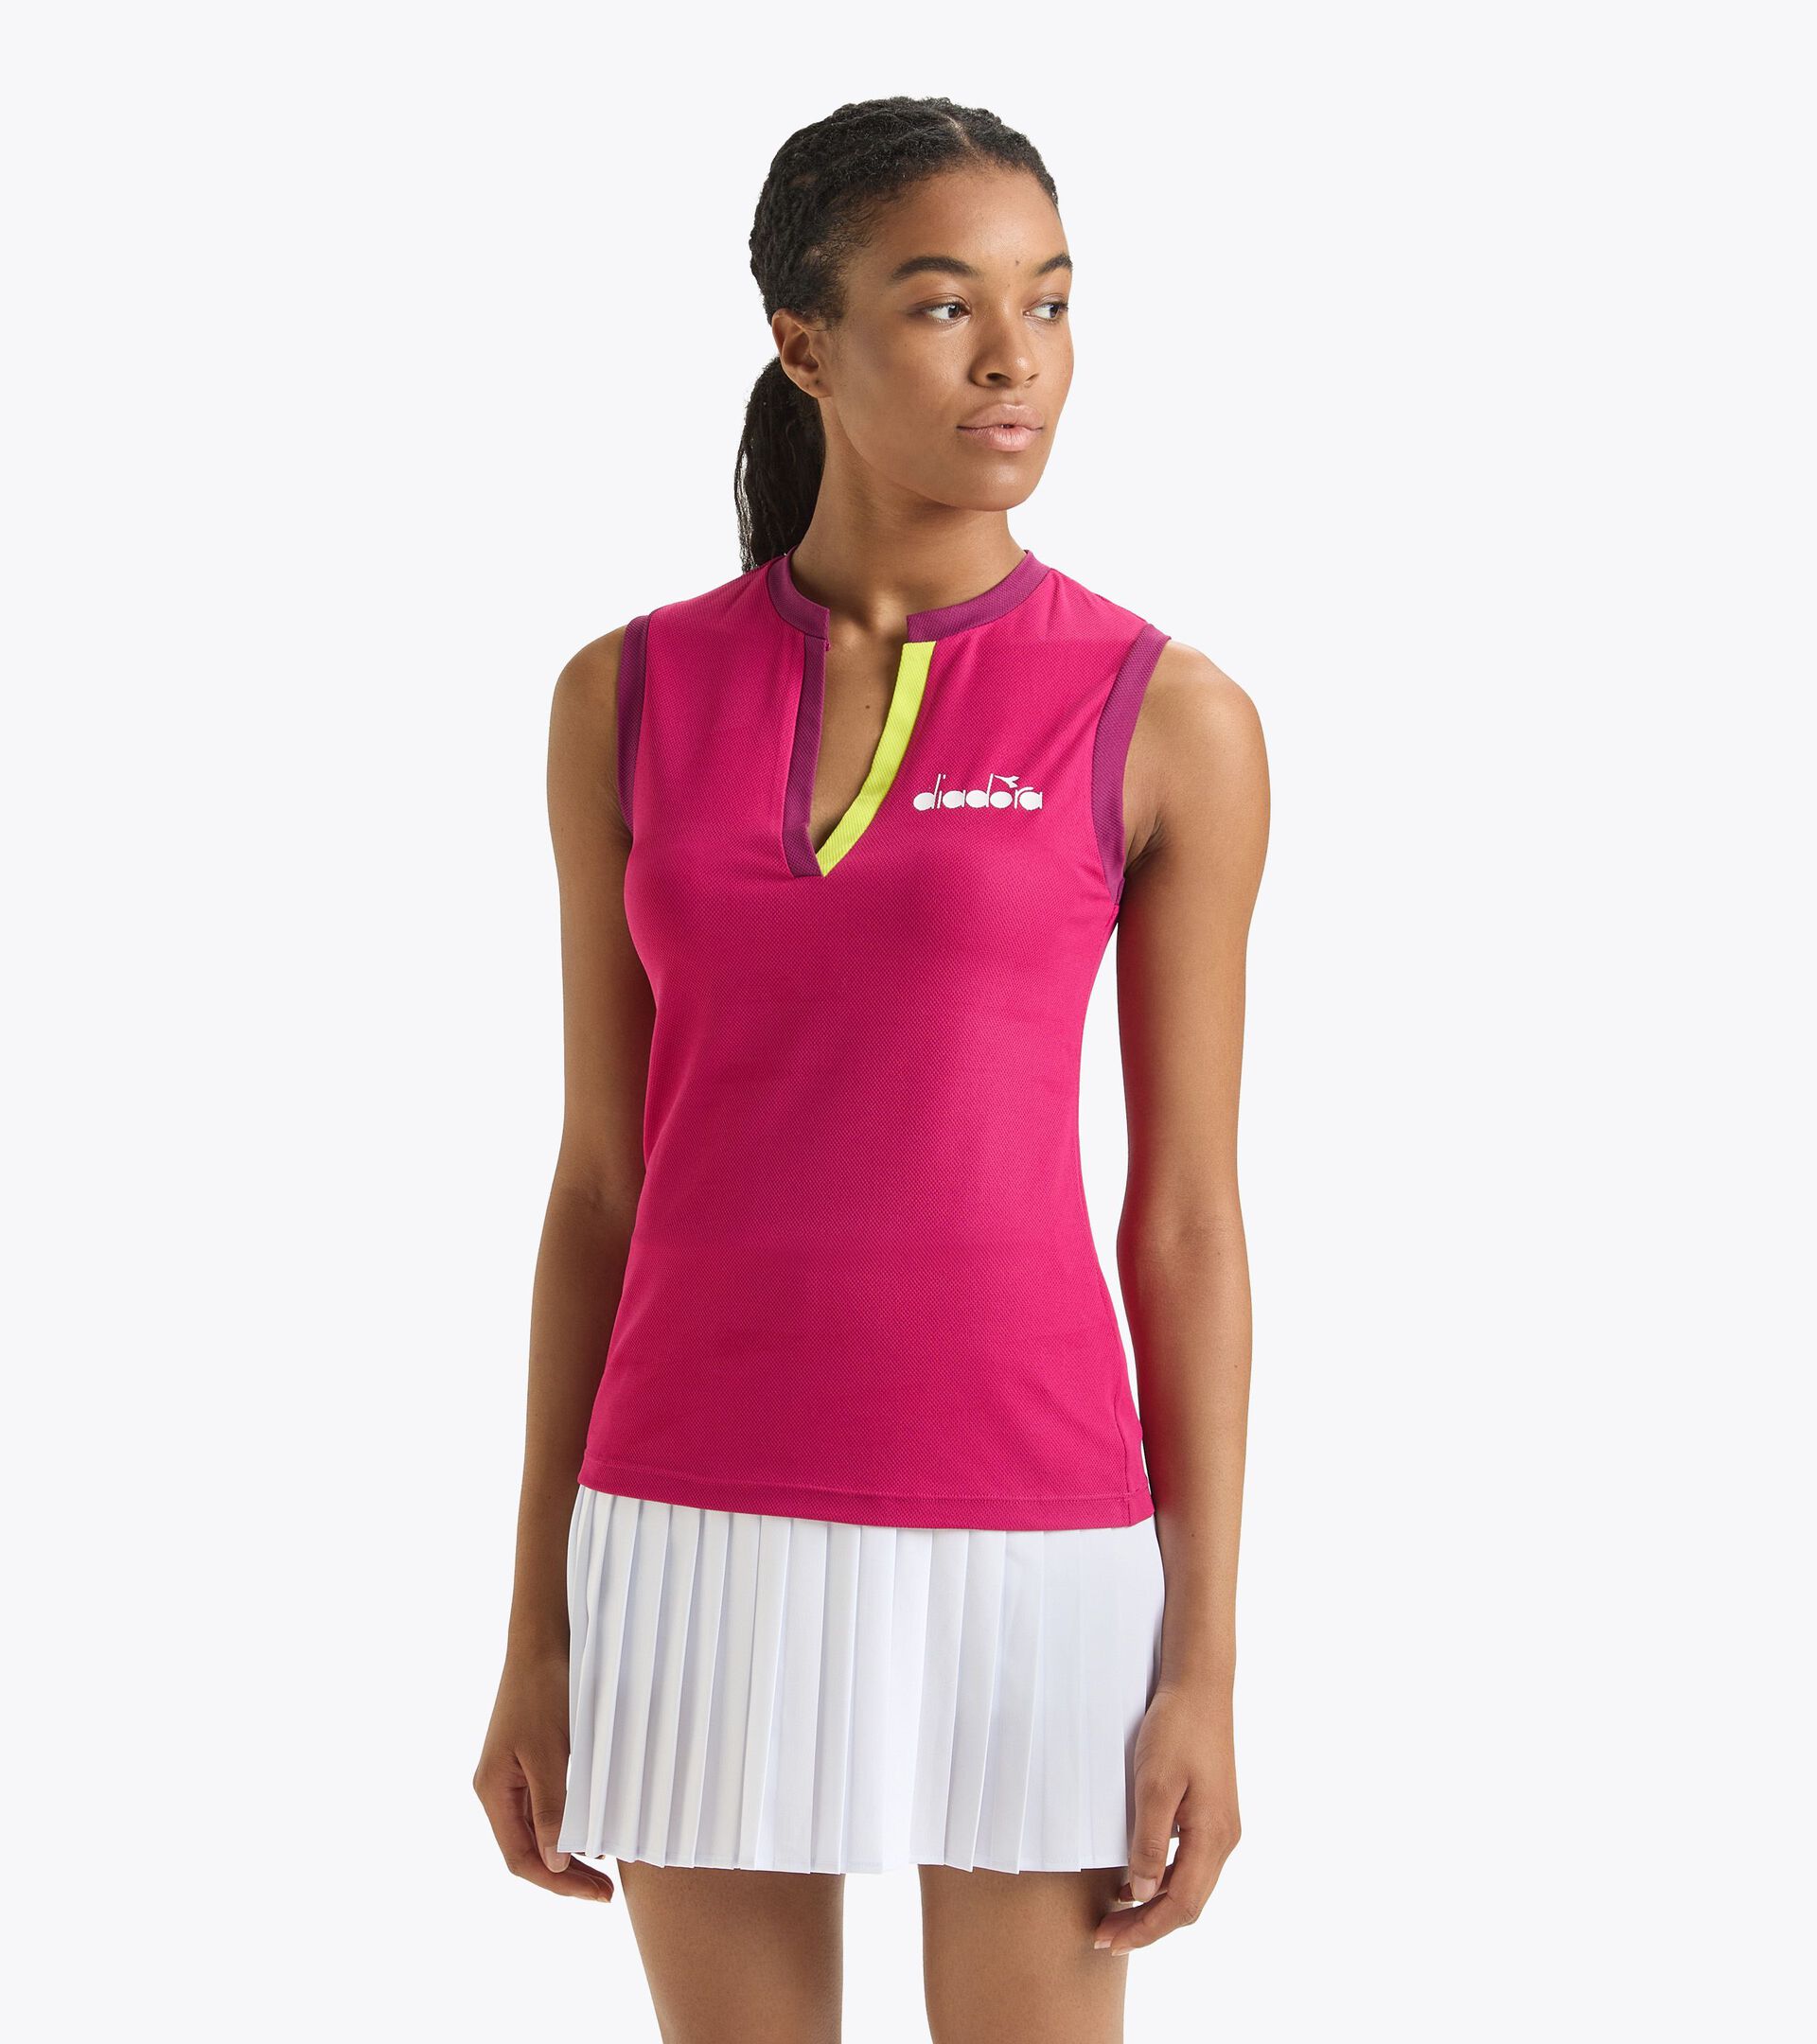 L. TANK ICON Tennis tank top - Women - Diadora Online Store US